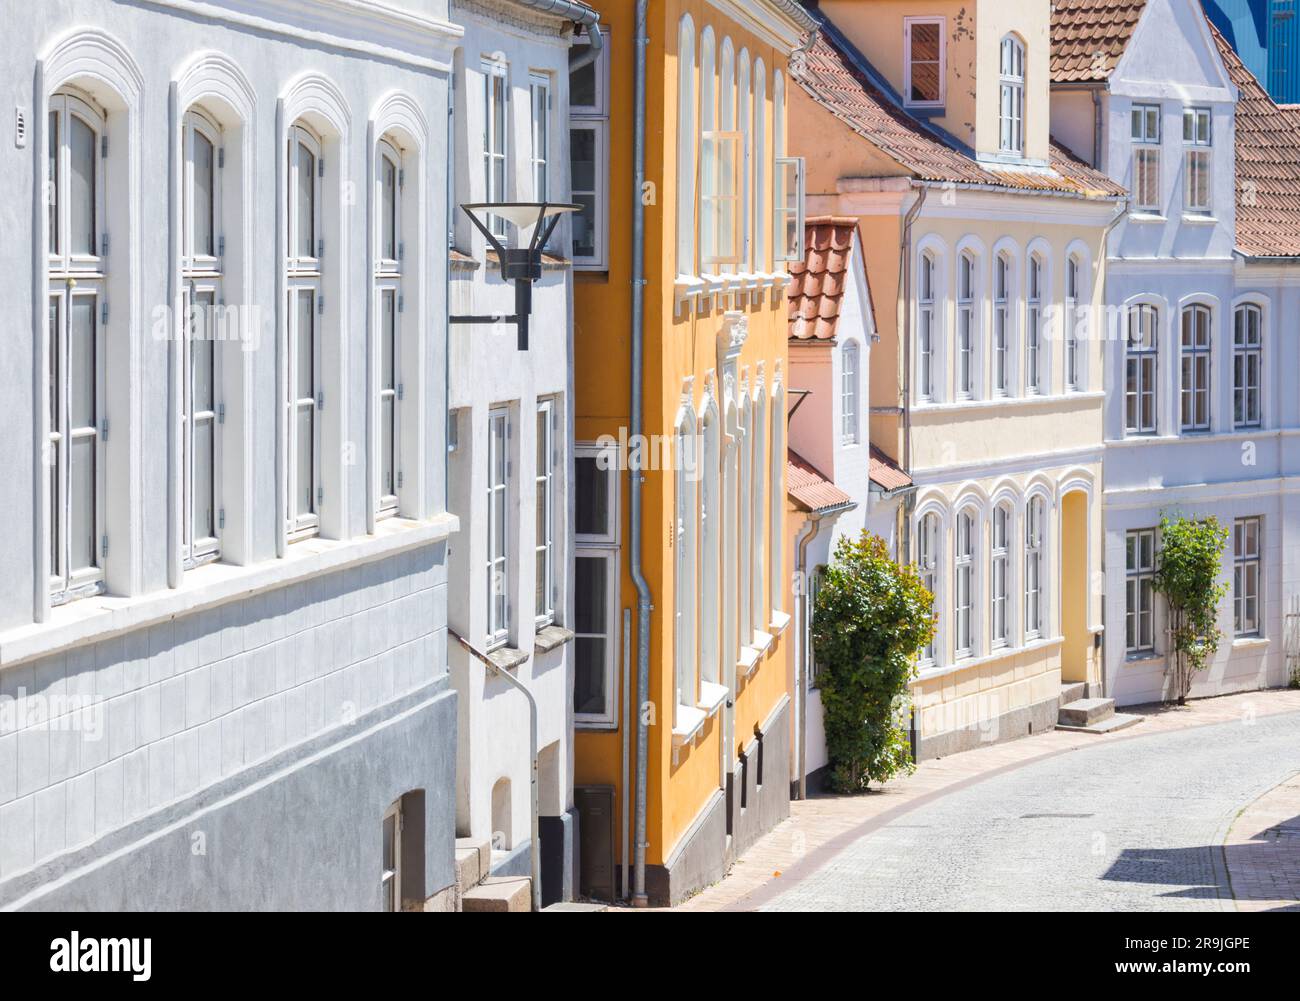 Facciate su una strada in pendenza nella città vecchia di Aabenraa, Danimarca Foto Stock